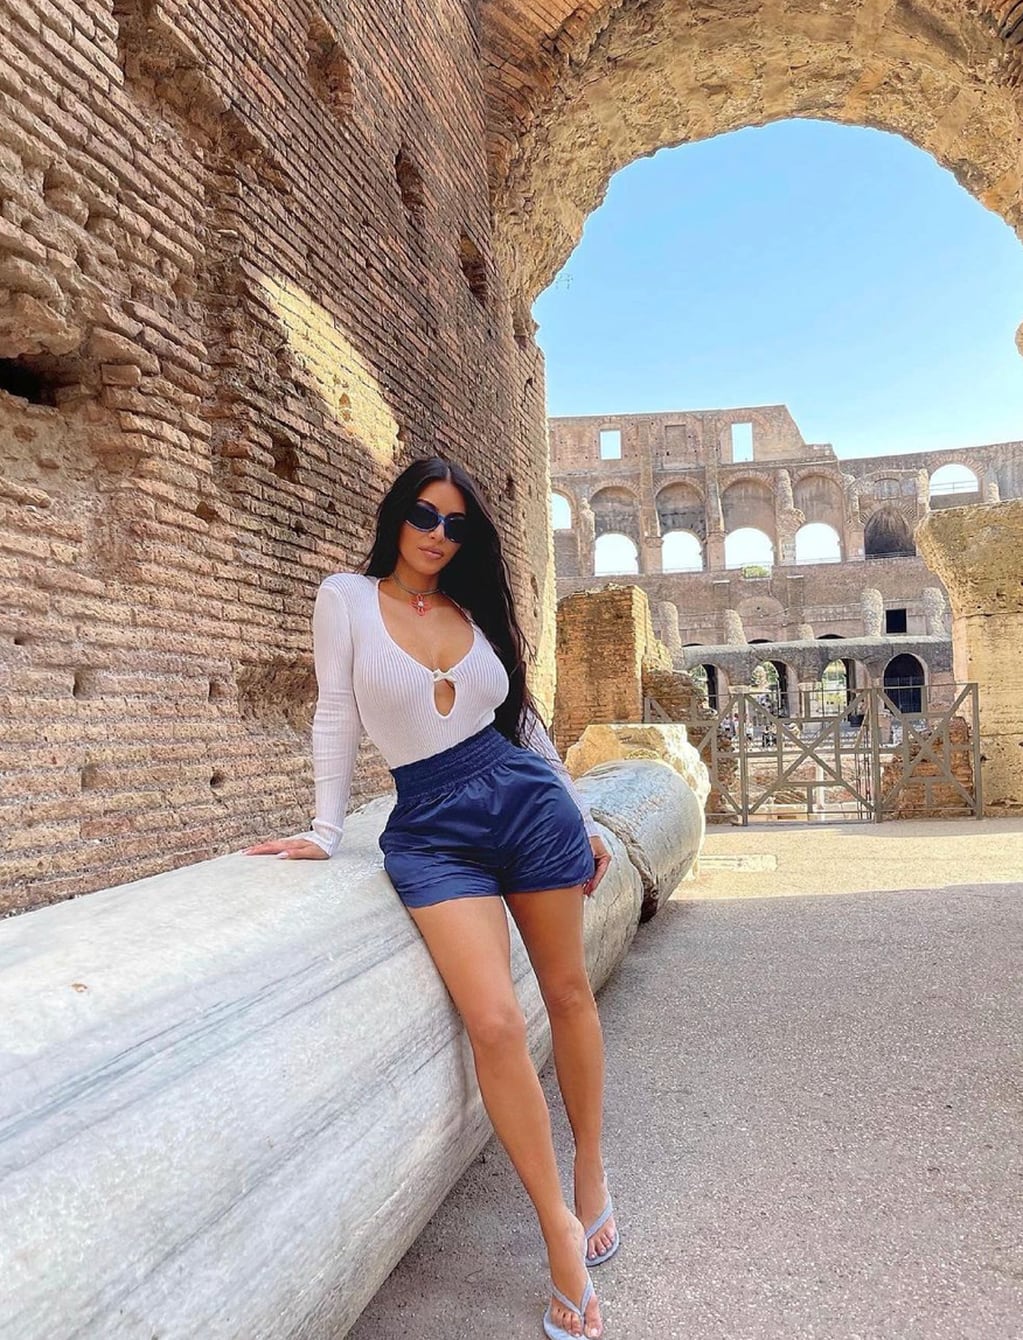 Fotos de su reciente viaje a Italia.